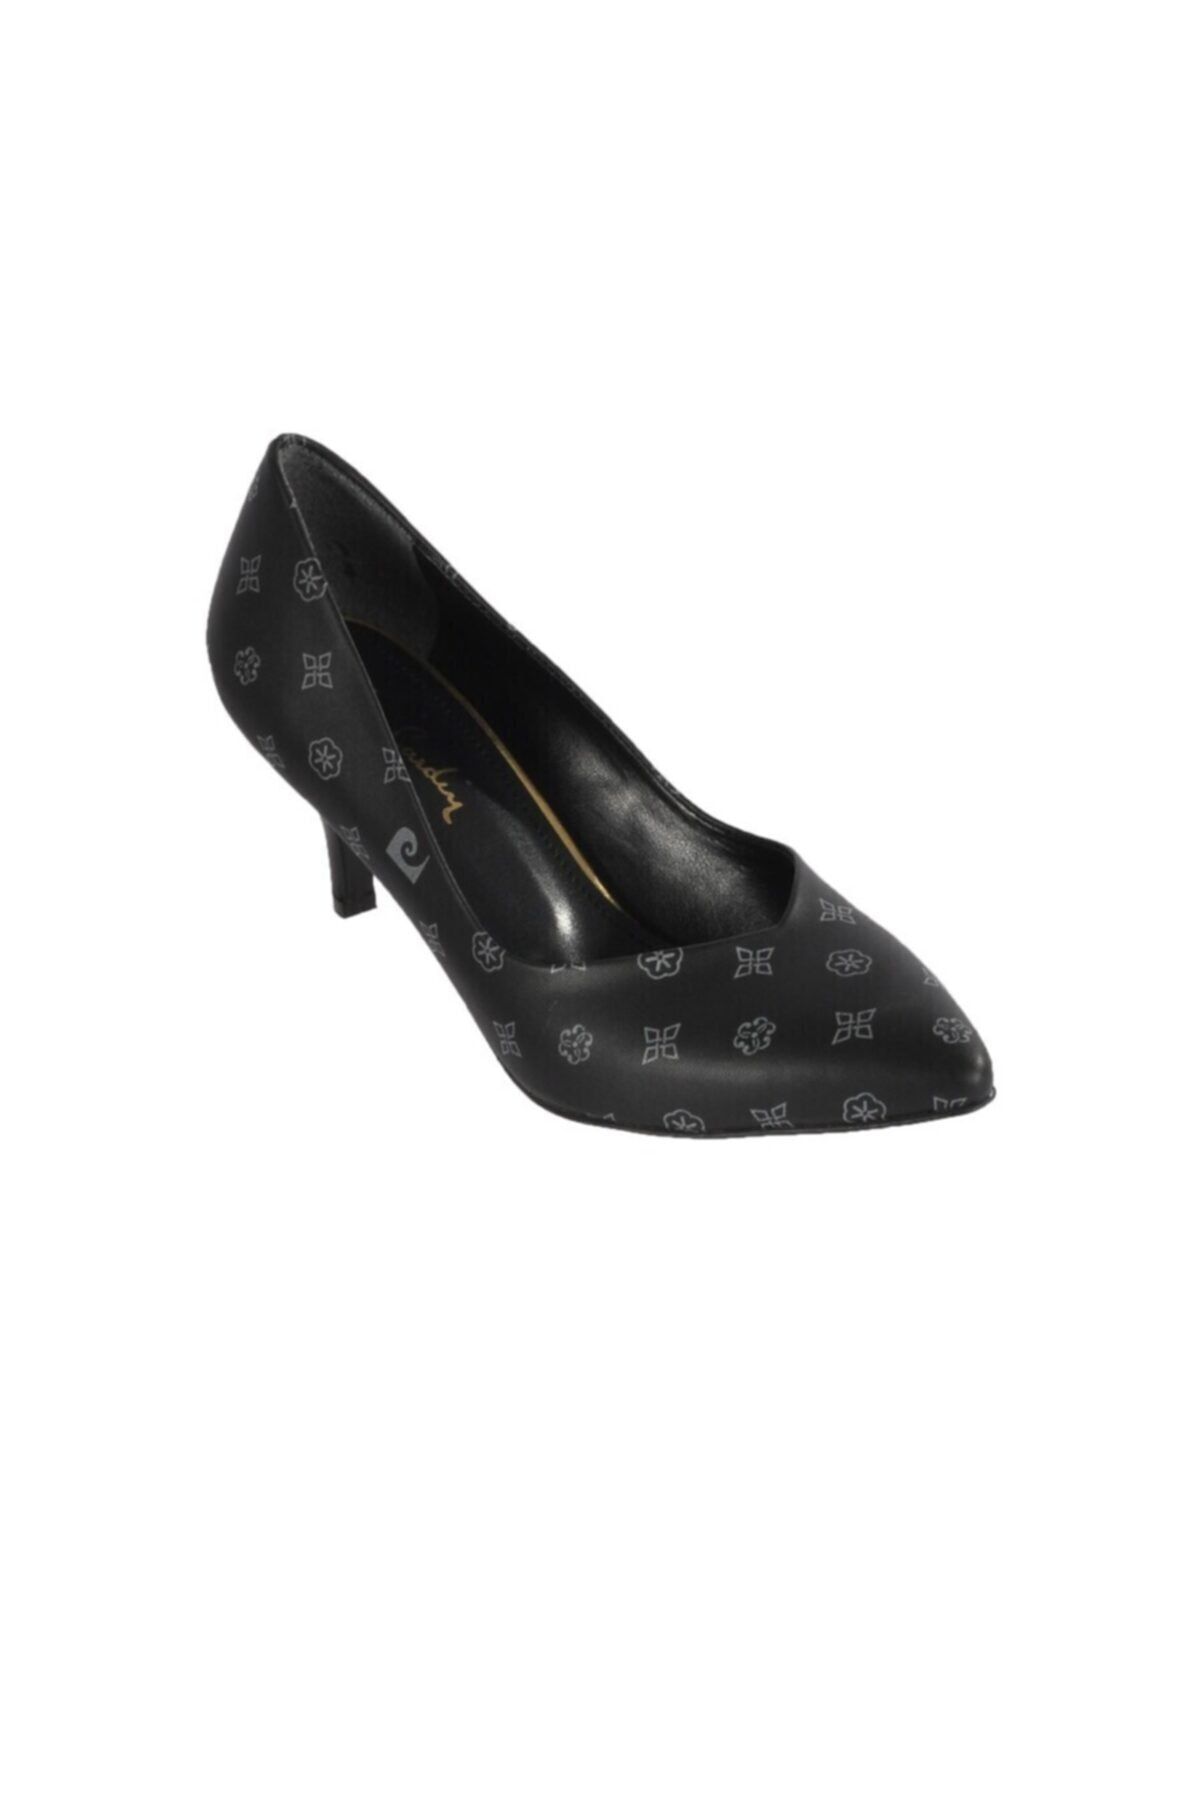 Pierre Cardin Pc Siyah Gri Kadın Topuklu Ayakkabı